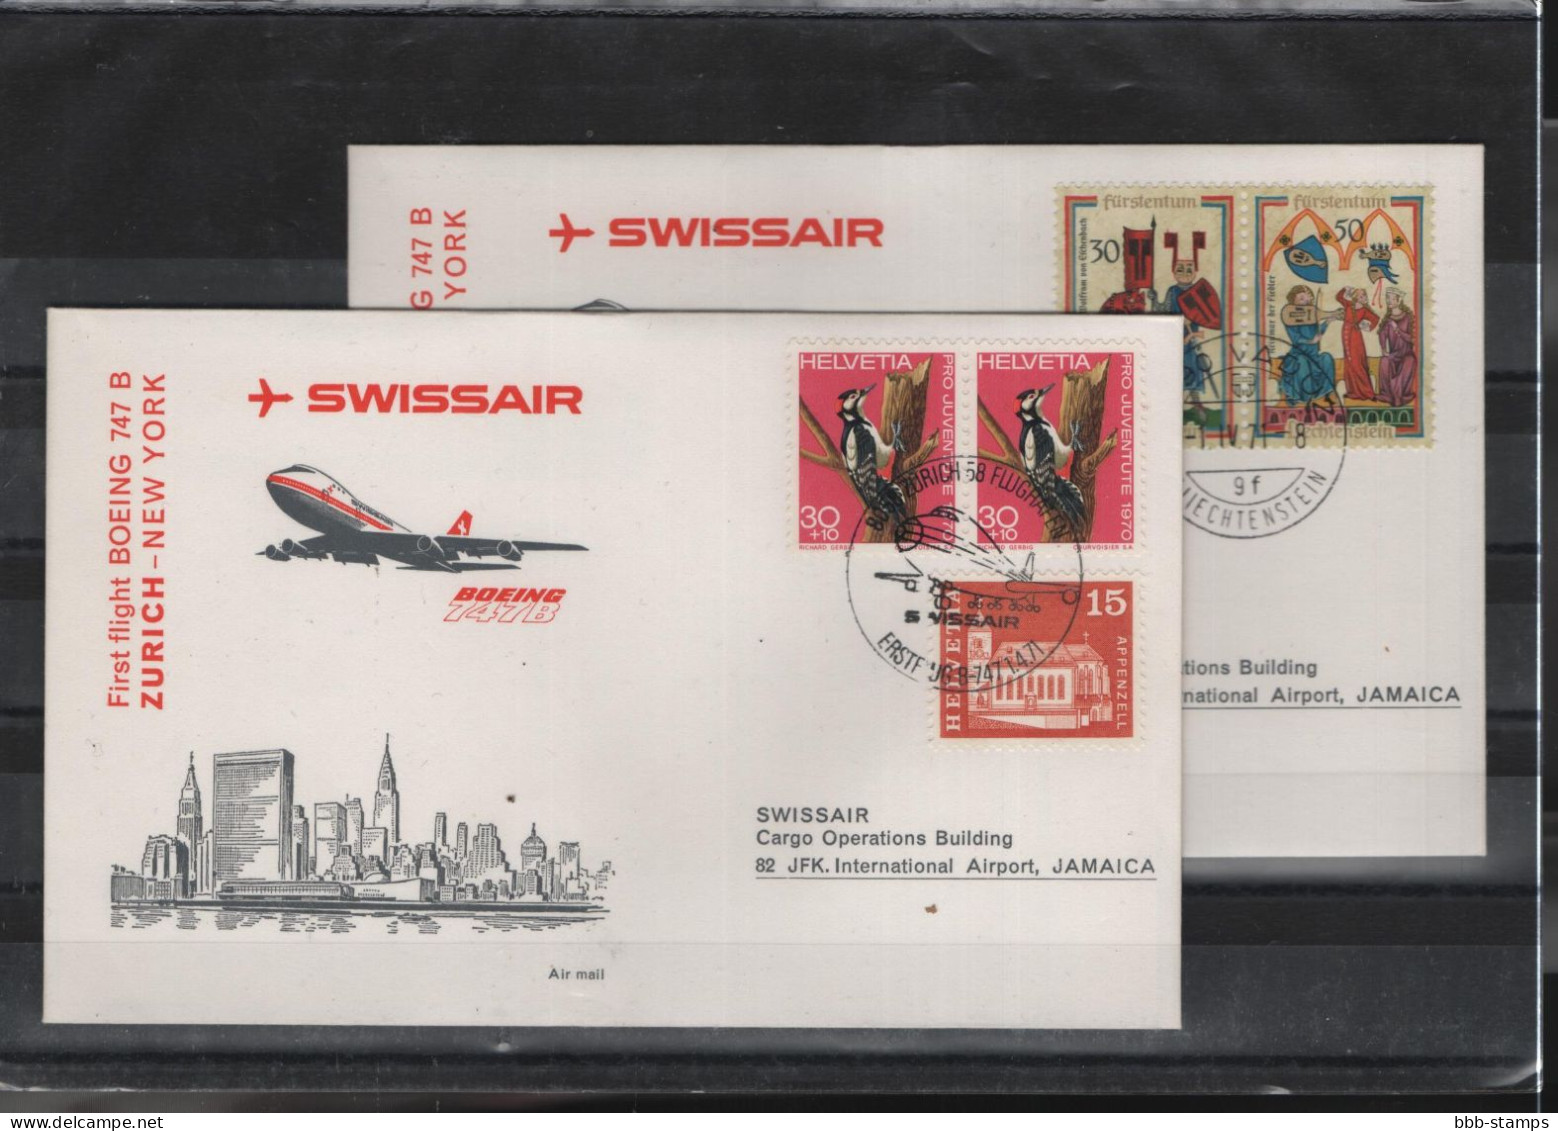 Schweiz Luftpost FFC Swissair 1.4.1971 Zürich - New York - Erst- U. Sonderflugbriefe